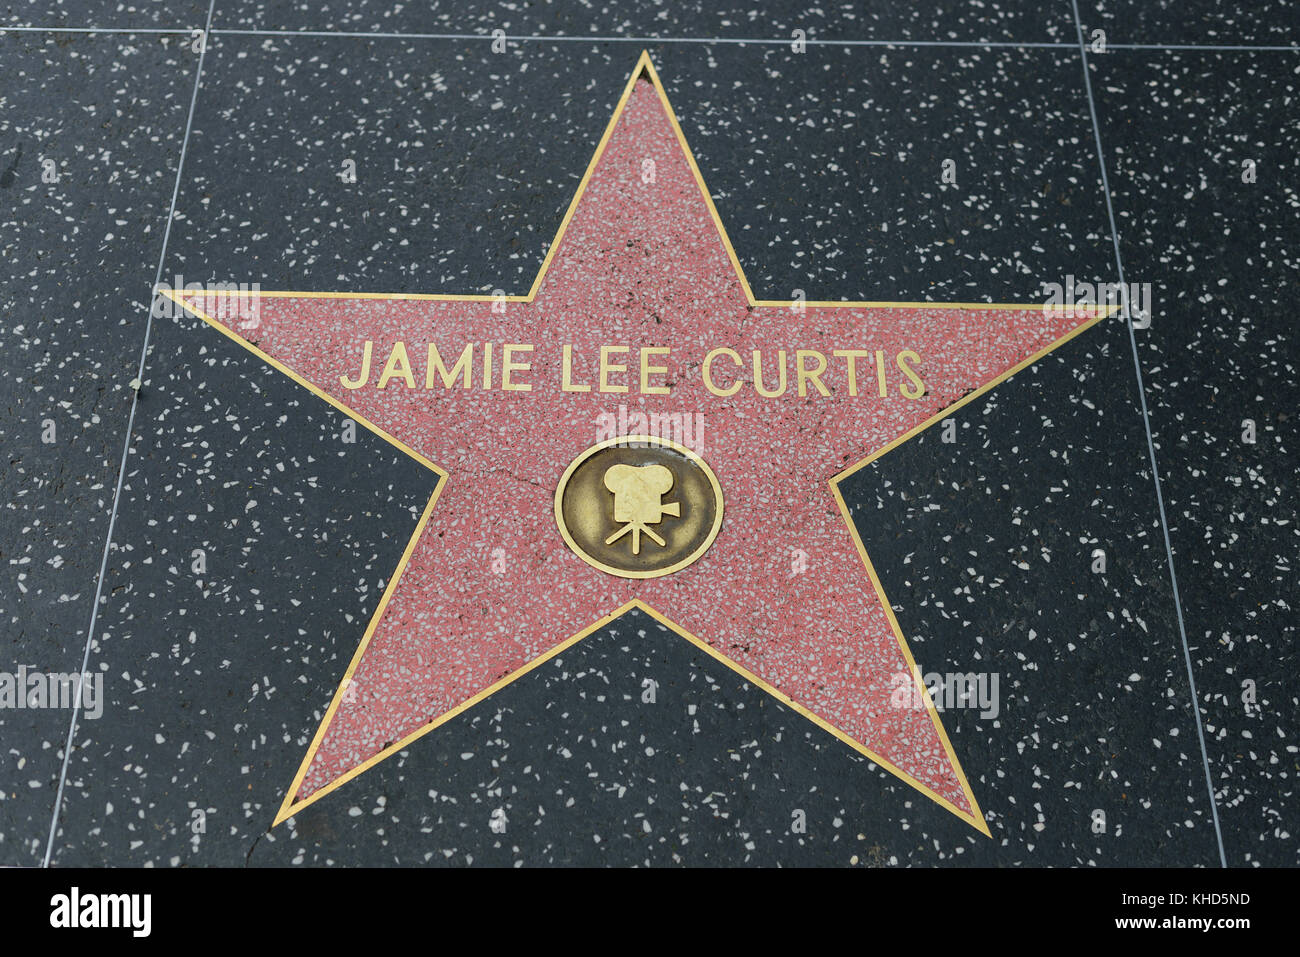 HOLLYWOOD, CA - DICIEMBRE 06: Jamie Lee Curtis protagoniza el Paseo de la Fama de Hollywood en Hollywood, California el 6 de diciembre de 2016. Foto de stock